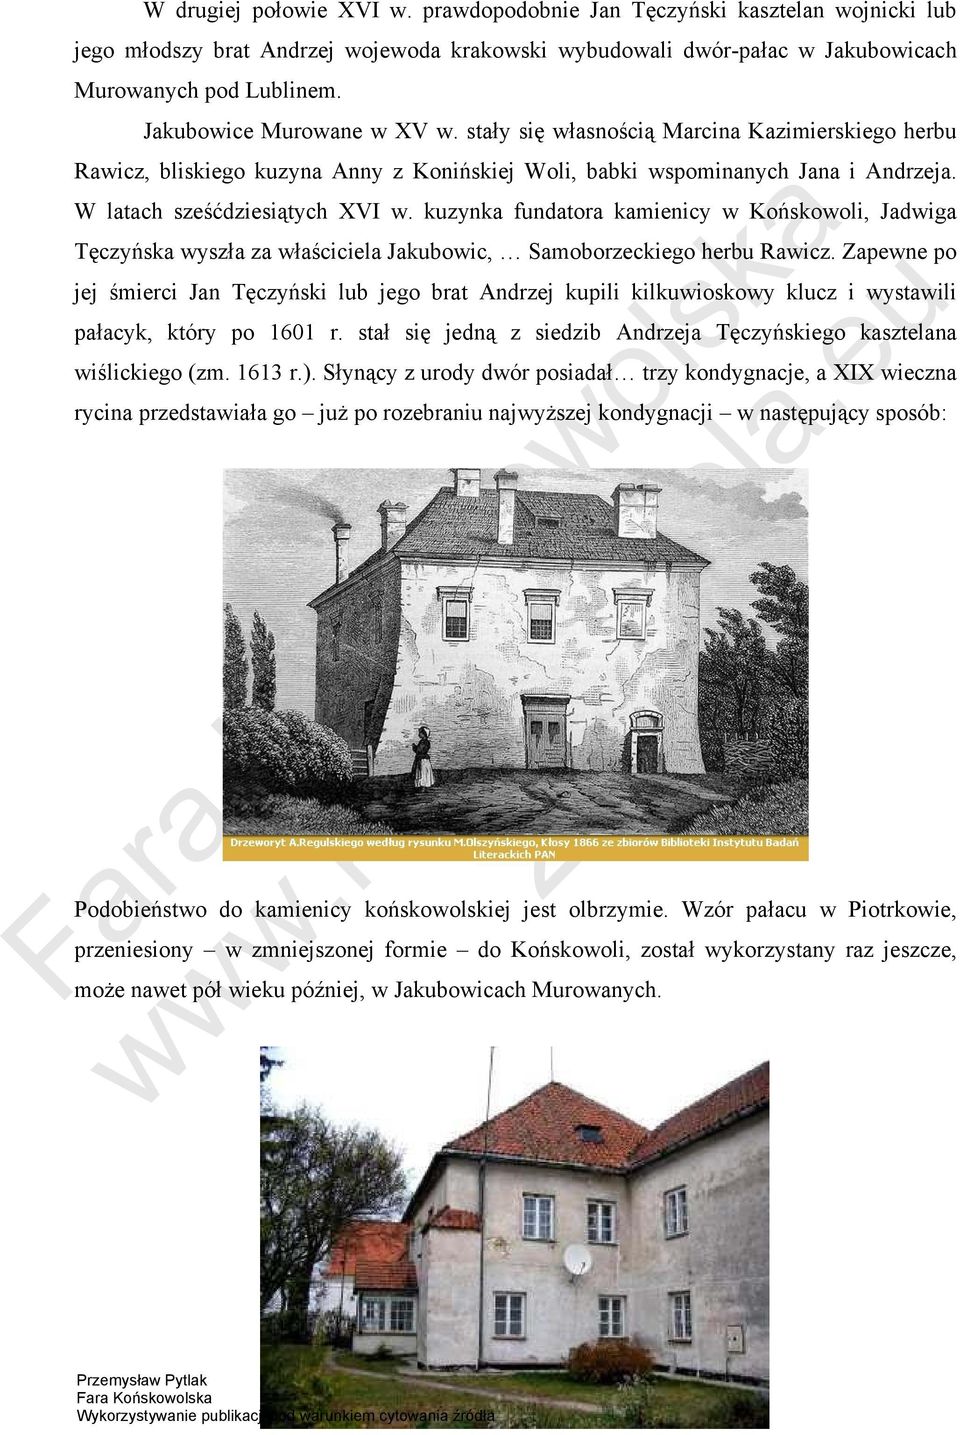 kuzynka fundatora kamienicy w Końskowoli, Jadwiga Tęczyńska wyszła za właściciela Jakubowic, Samoborzeckiego herbu Rawicz.